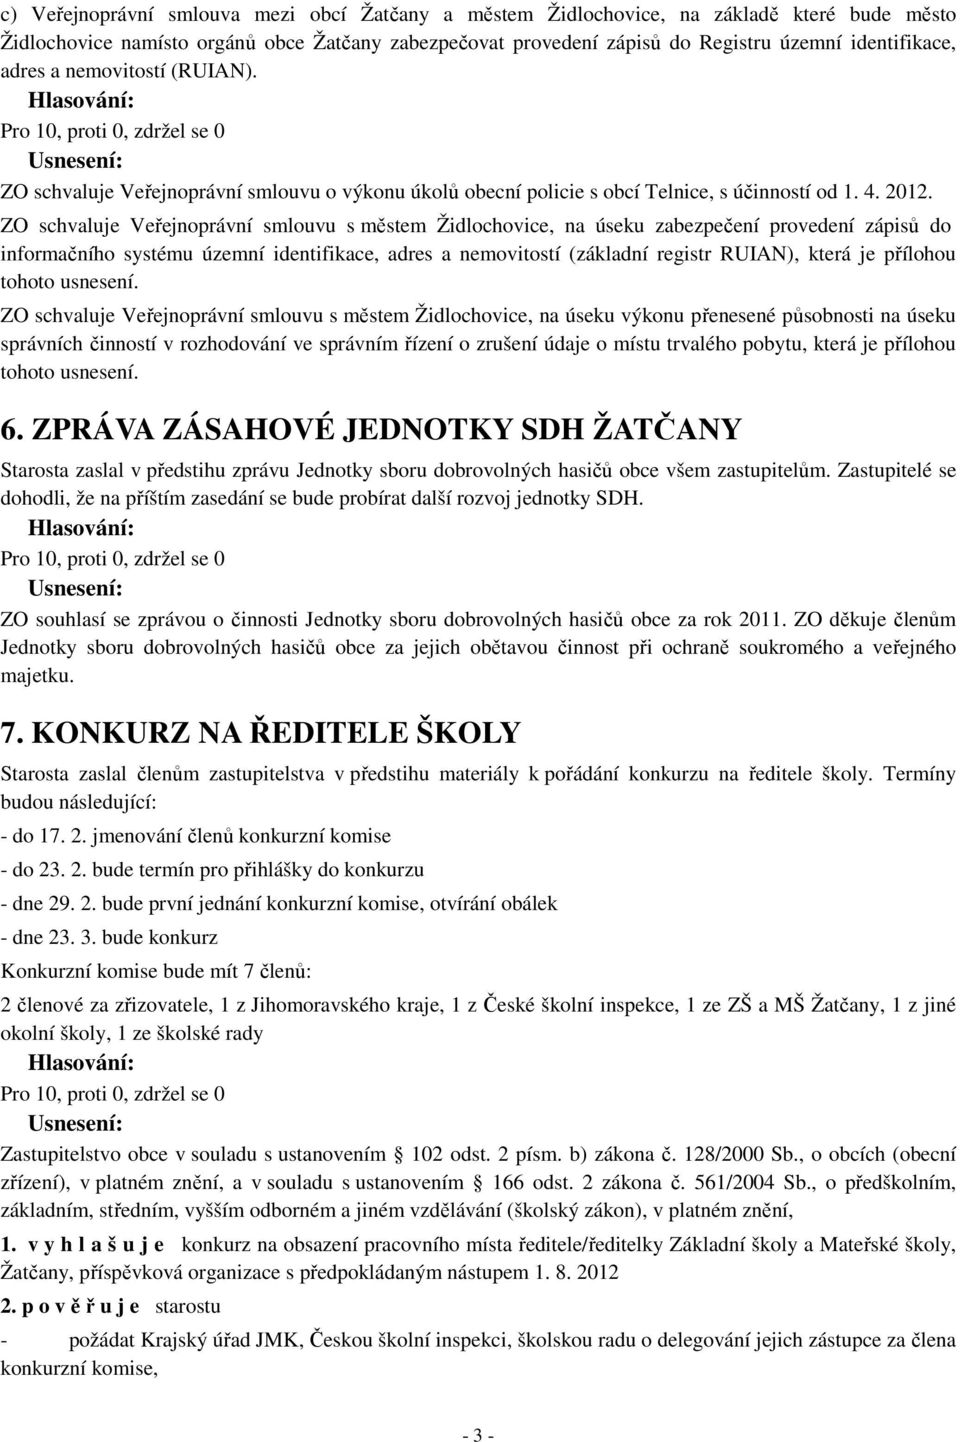 ZO schvaluje Veřejnoprávní smlouvu s městem Židlochovice, na úseku zabezpečení provedení zápisů do informačního systému územní identifikace, adres a nemovitostí (základní registr RUIAN), která je